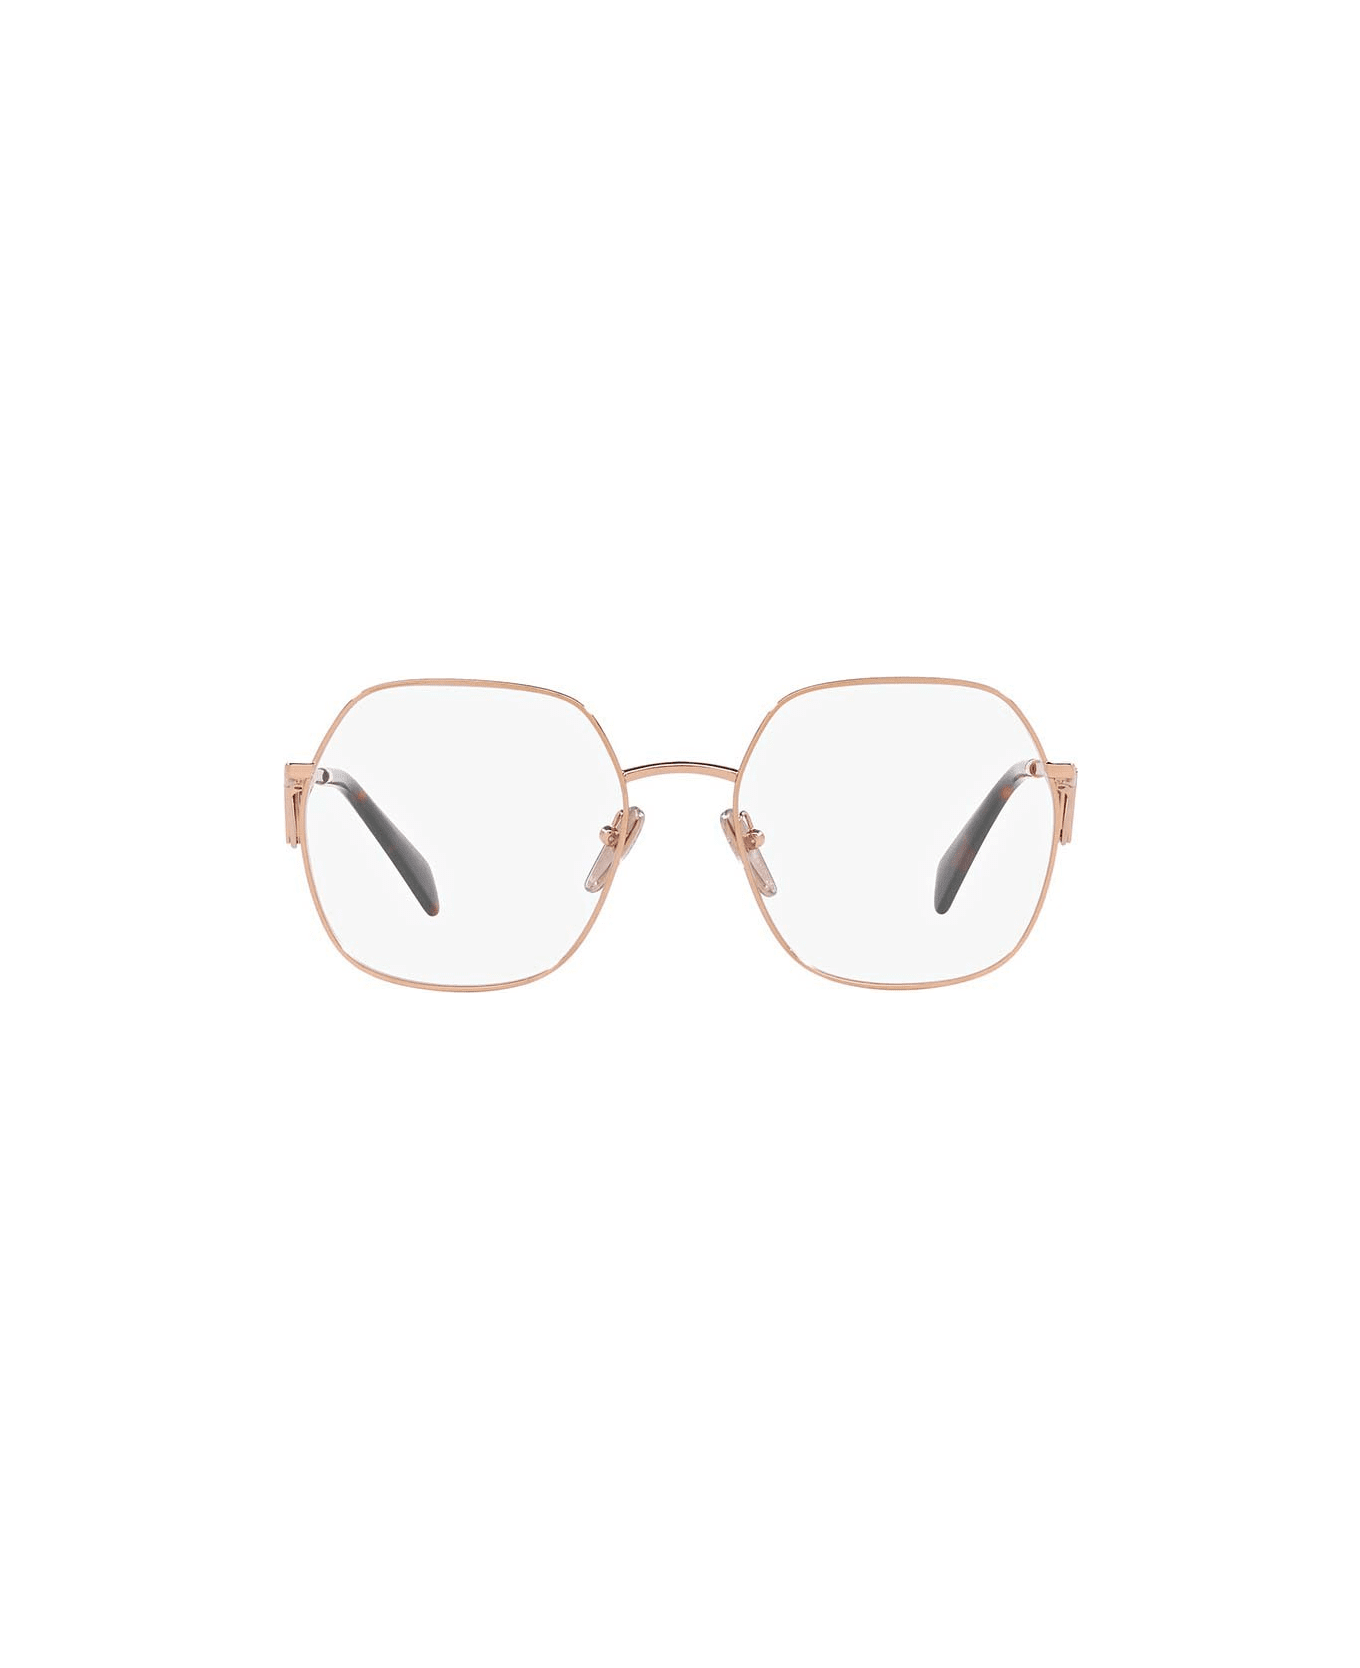 Prada Eyewear Glasses - SVF1O1 アイウェア